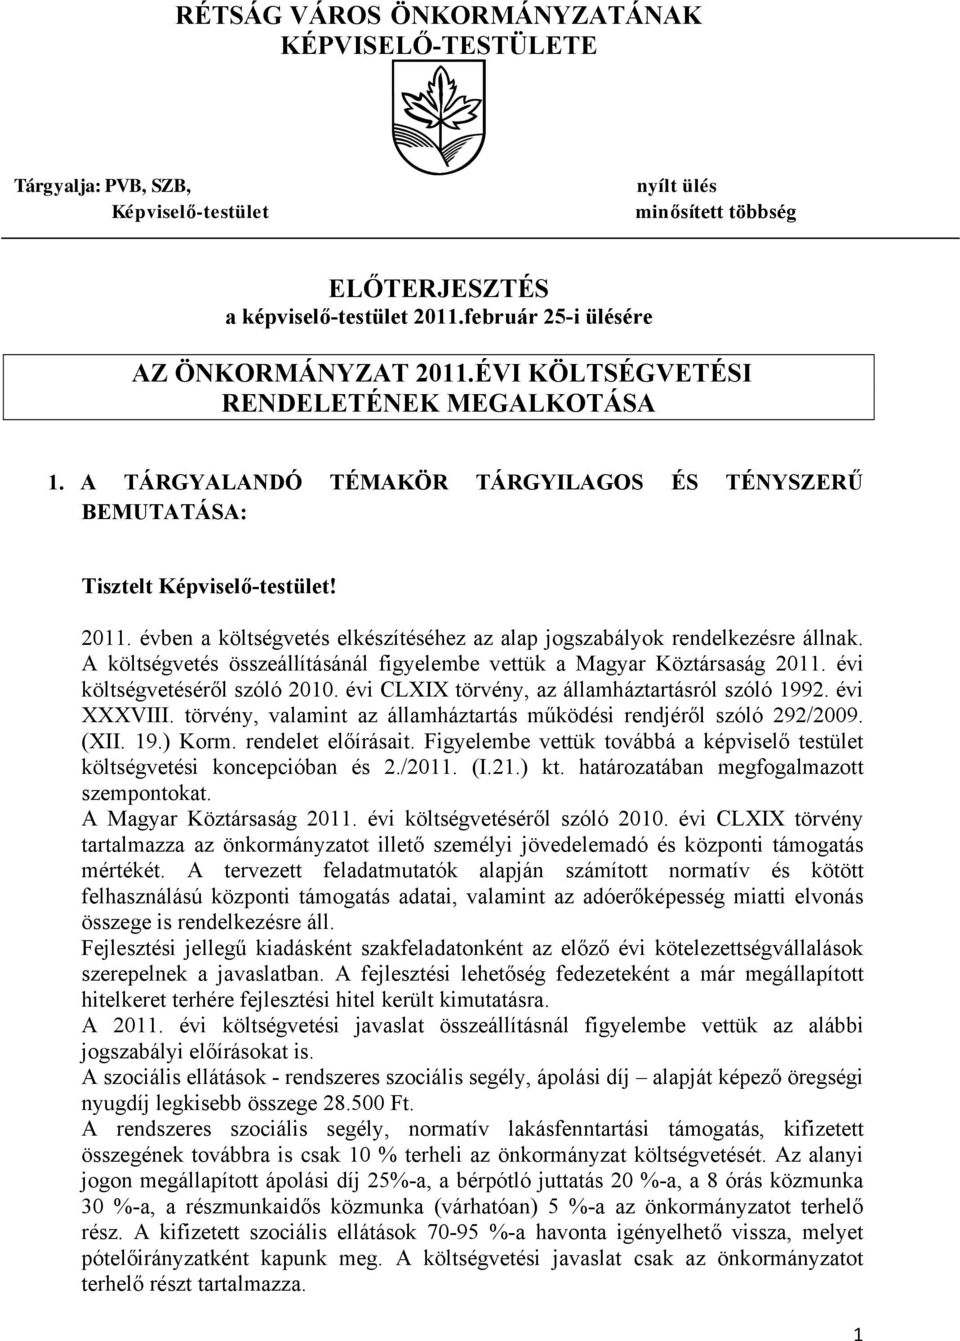 A költségvetés összeállításánál figyelembe vettük a Magyar Köztársaság 2011. évi költségvetéséről szóló 2010. évi CLXIX törvény, az államháztartásról szóló 1992. évi XXXVIII.